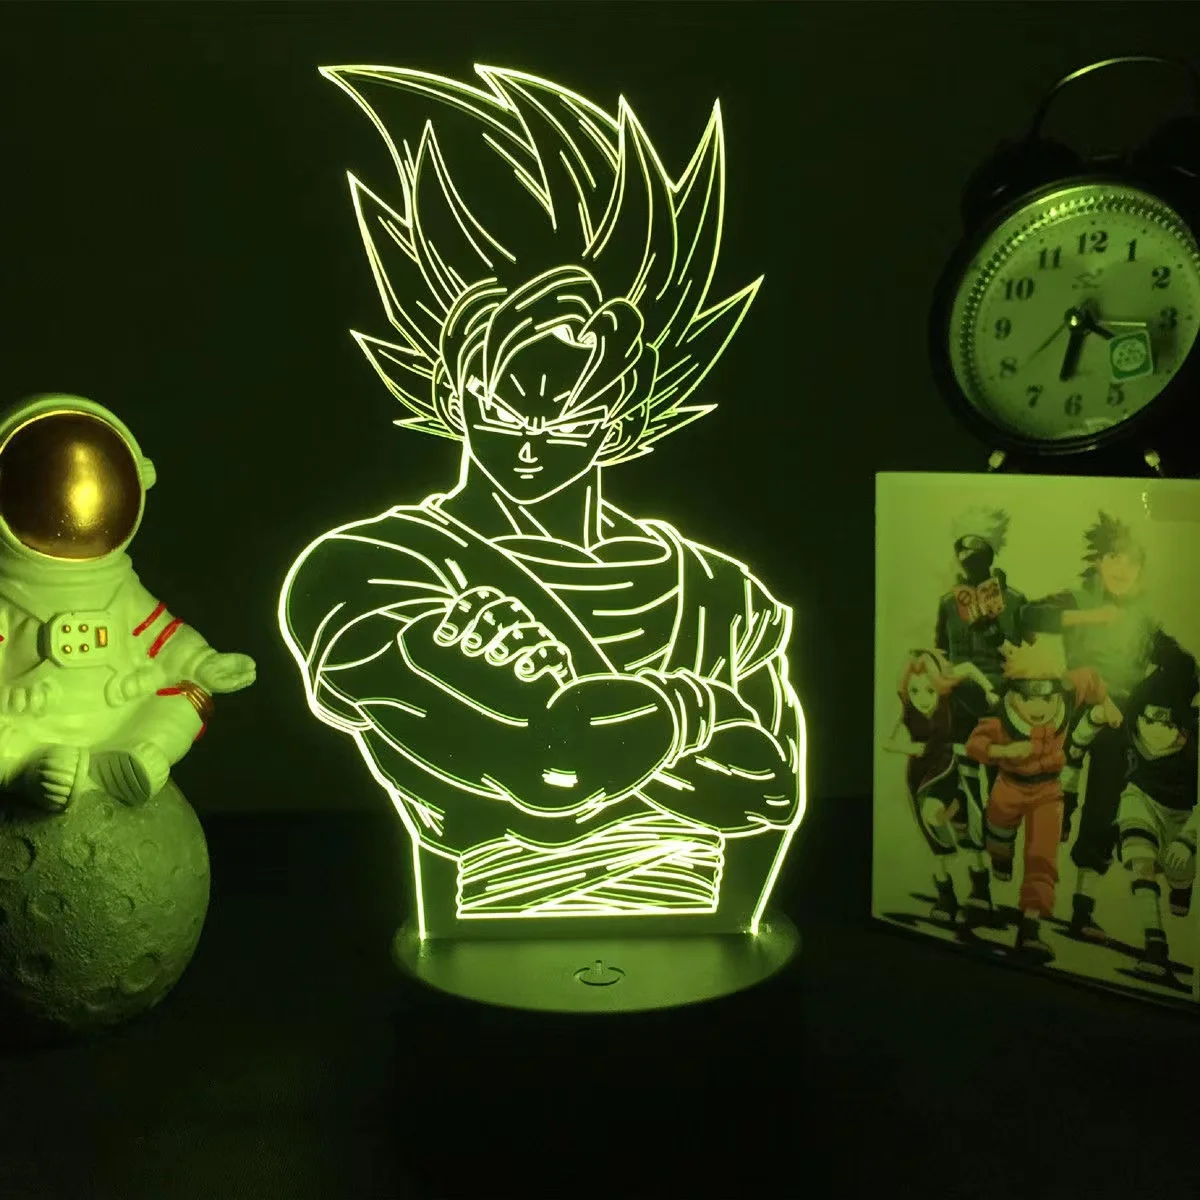 Anime Vegeta Cartoon 3D Led Light Anime Figure Night Light Dragon Ball Z King Childhood Son Goku GK Desk Lamp Decor Gift